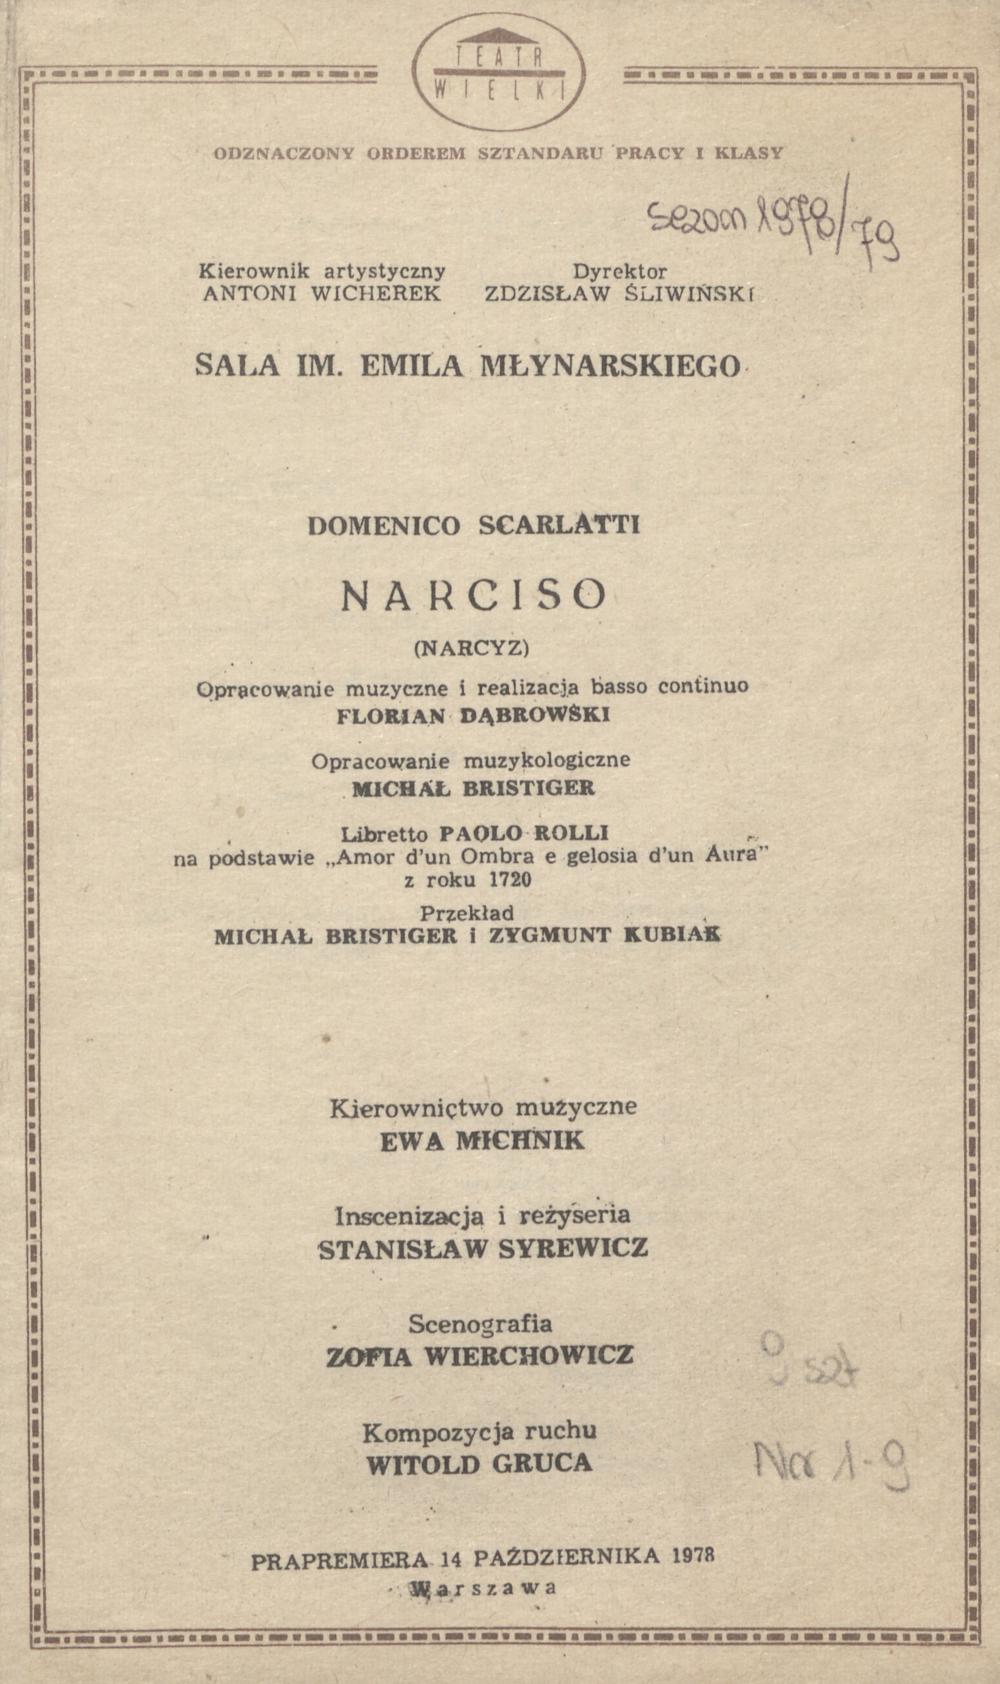 Wkładka premierowa „Narciso” Domenico Scarlatti 14-10-1978